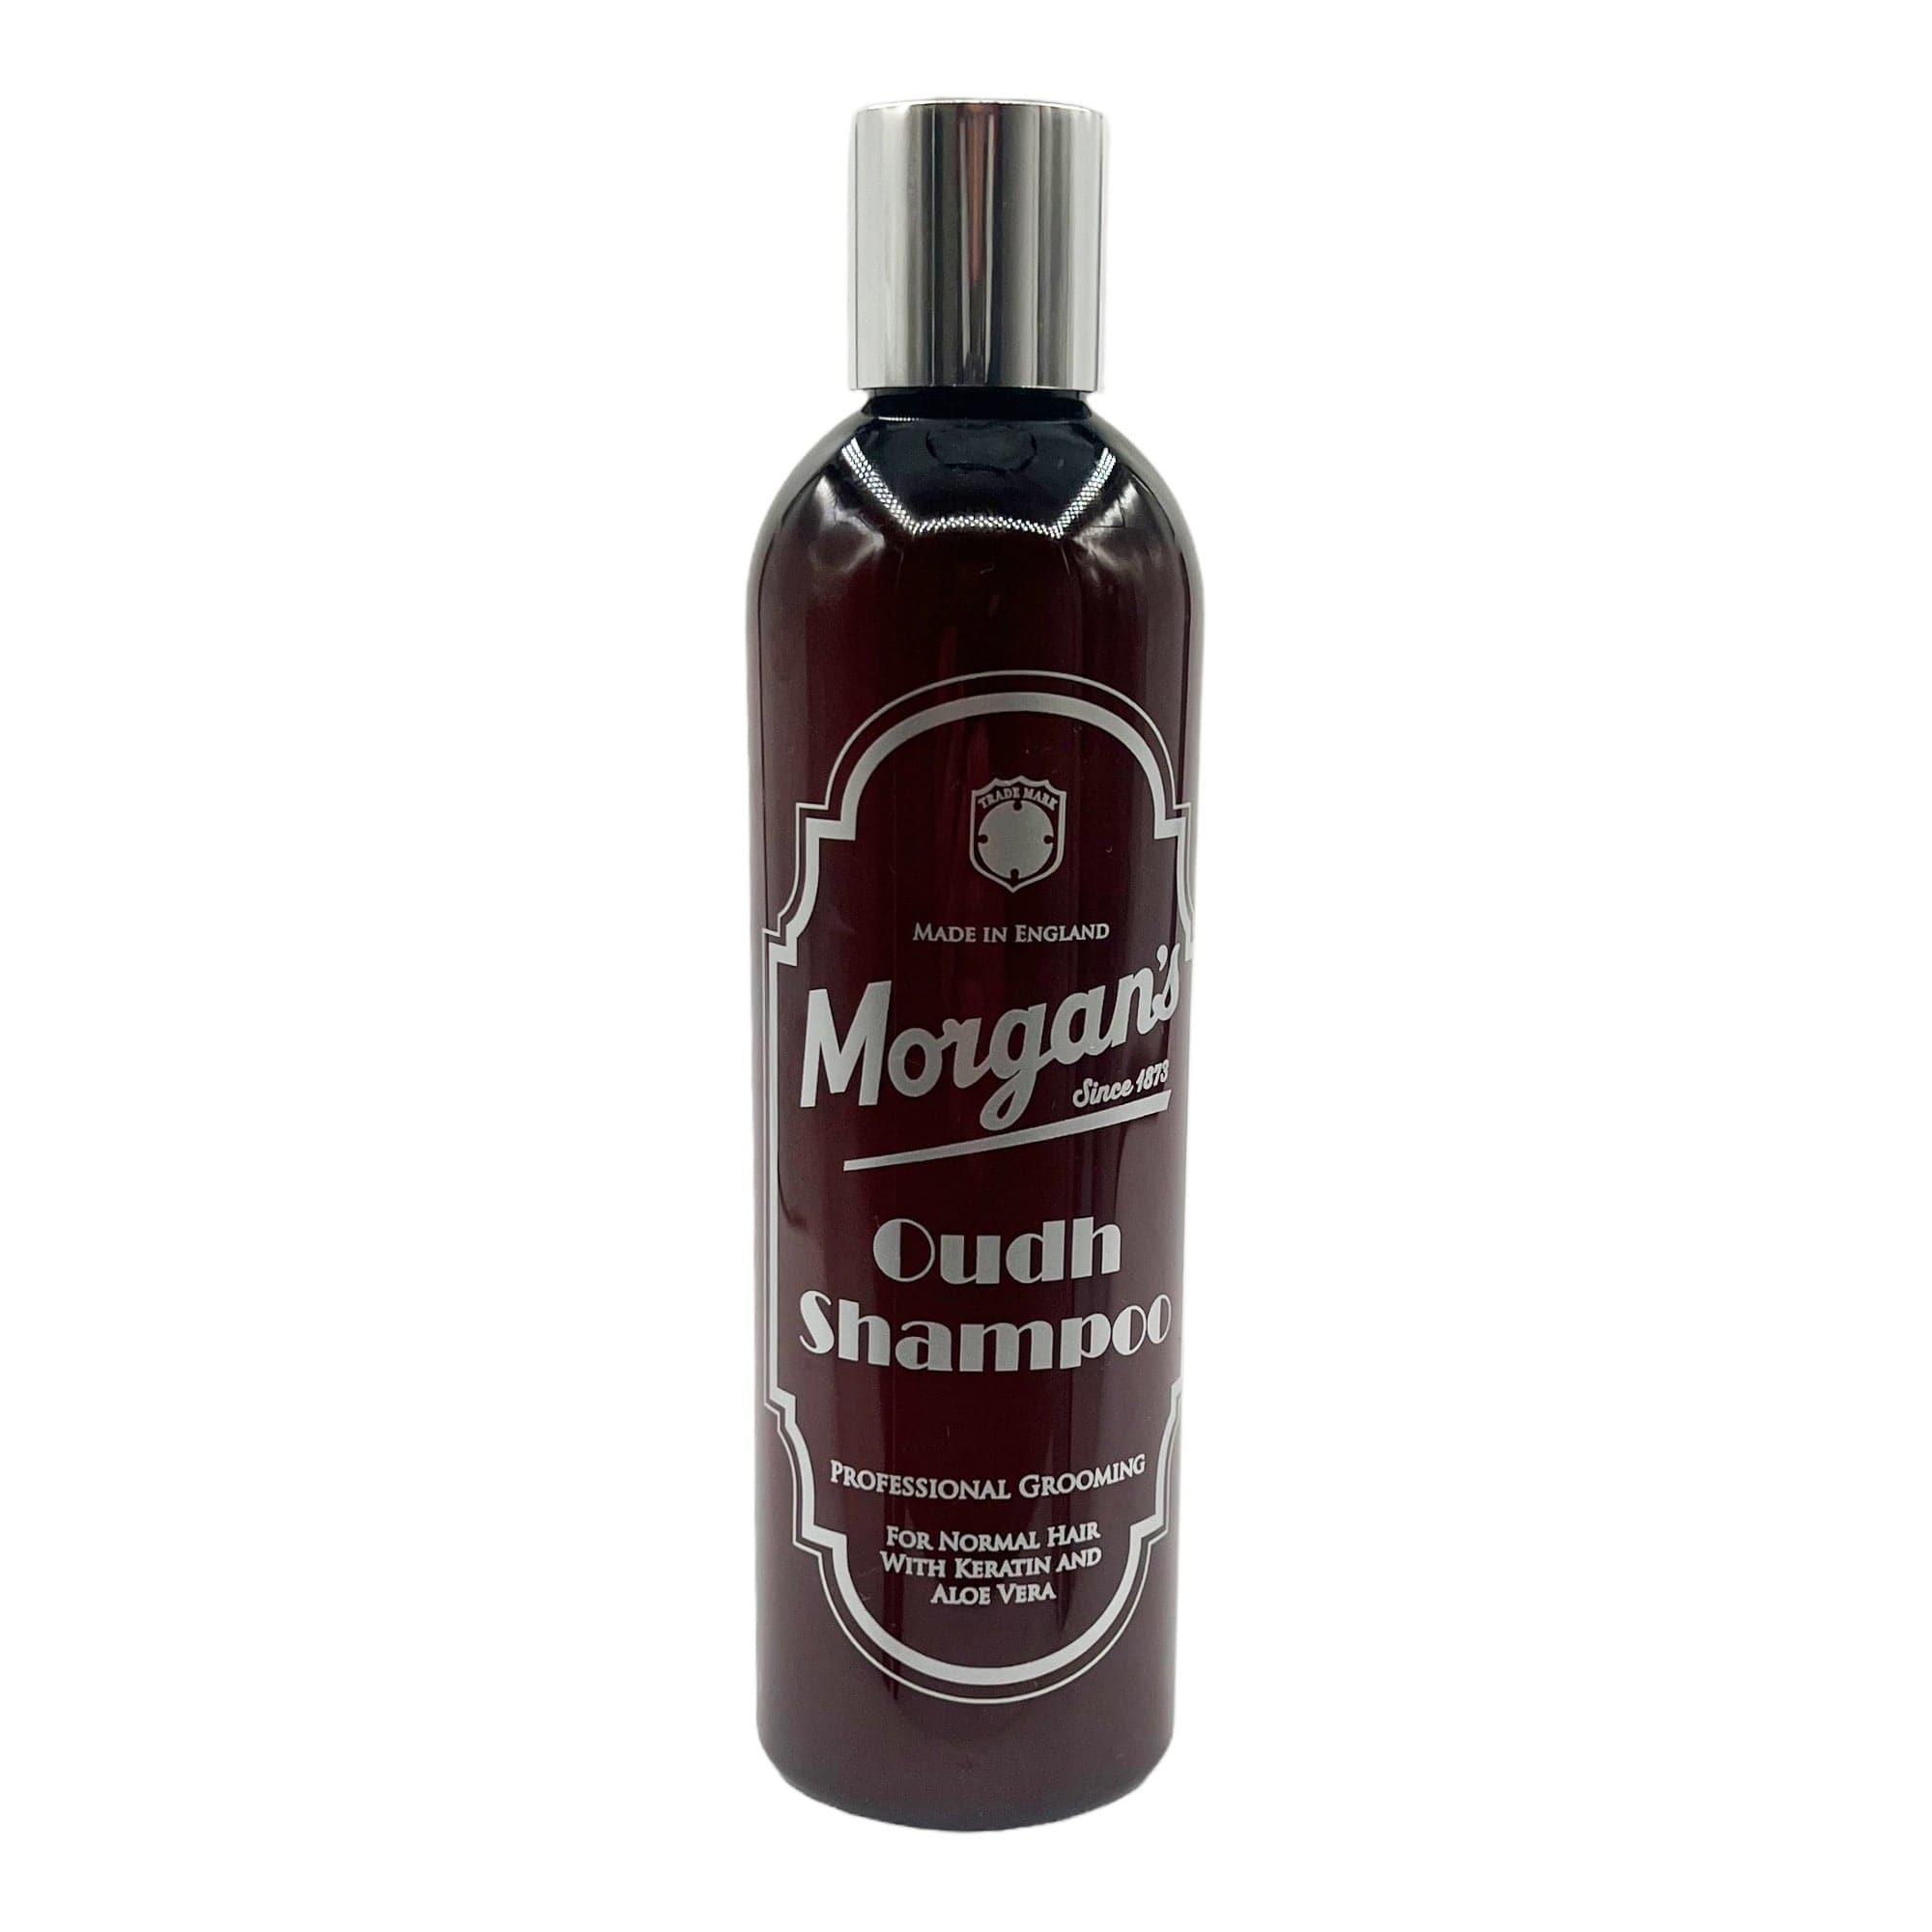 Morgan's - Oudh Shampoo 250ml